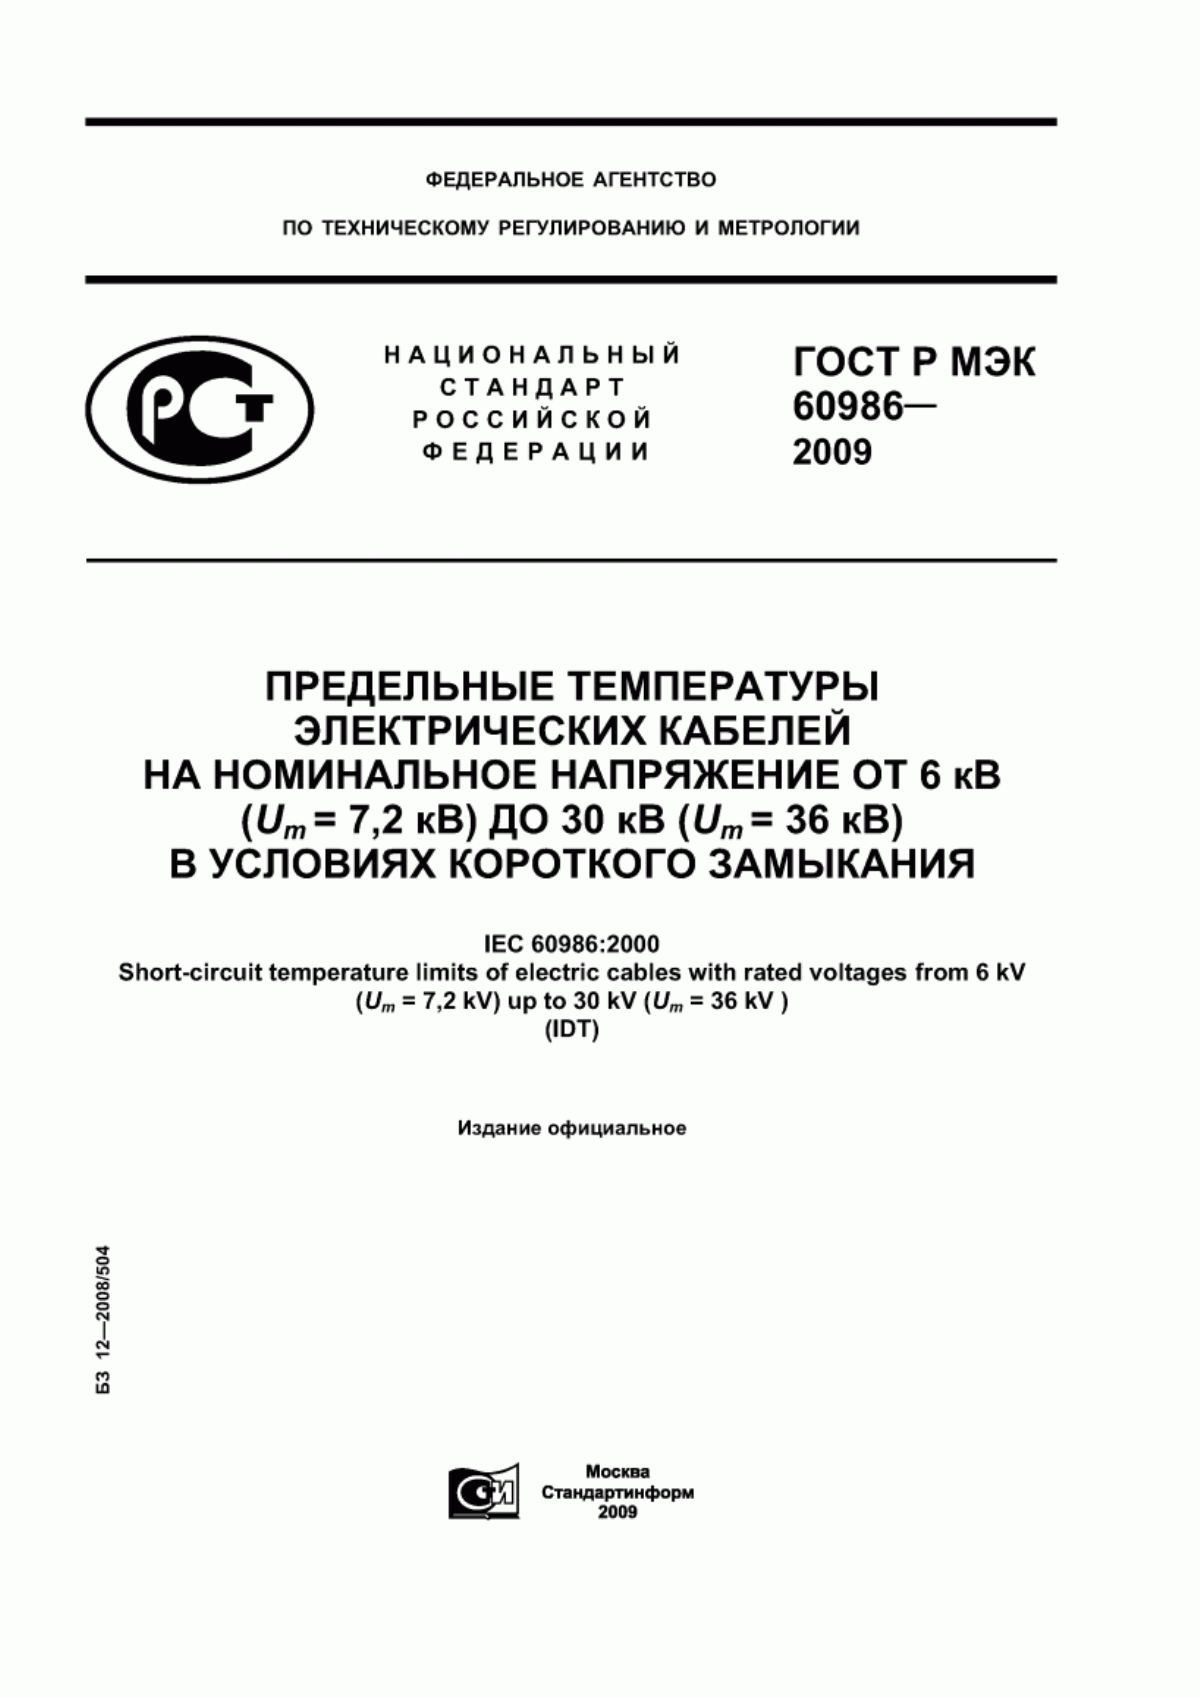 ГОСТ Р МЭК 60986-2009 Предельные температуры электрических кабелей на номинальное напряжение от 6 кВ (Um = 7,2 кВ) до 30 кВ (Um = 36 кВ) в условиях короткого замыкания